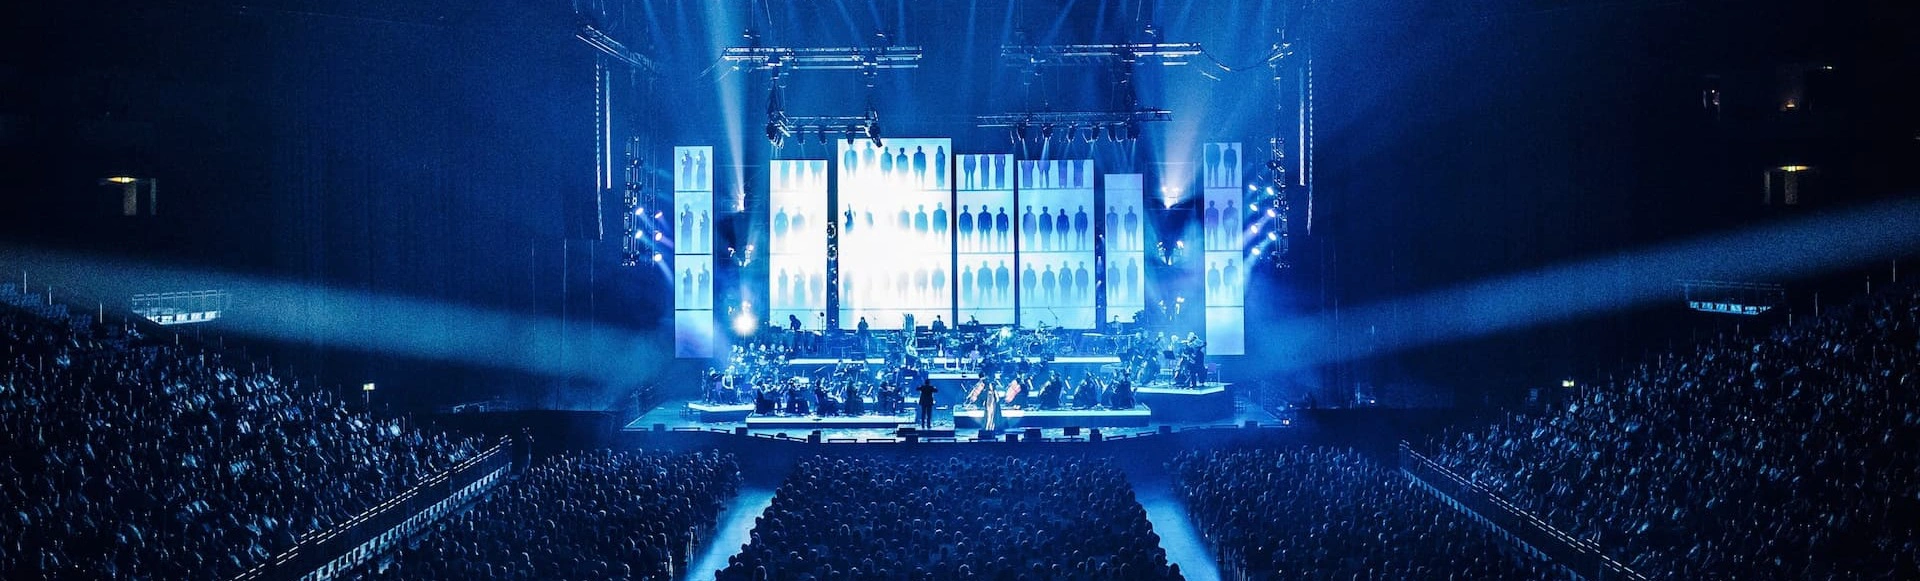 ВТБ-Арена готовится к потрясающему концерту «Art of Hans Zimmer» 10 ноября!